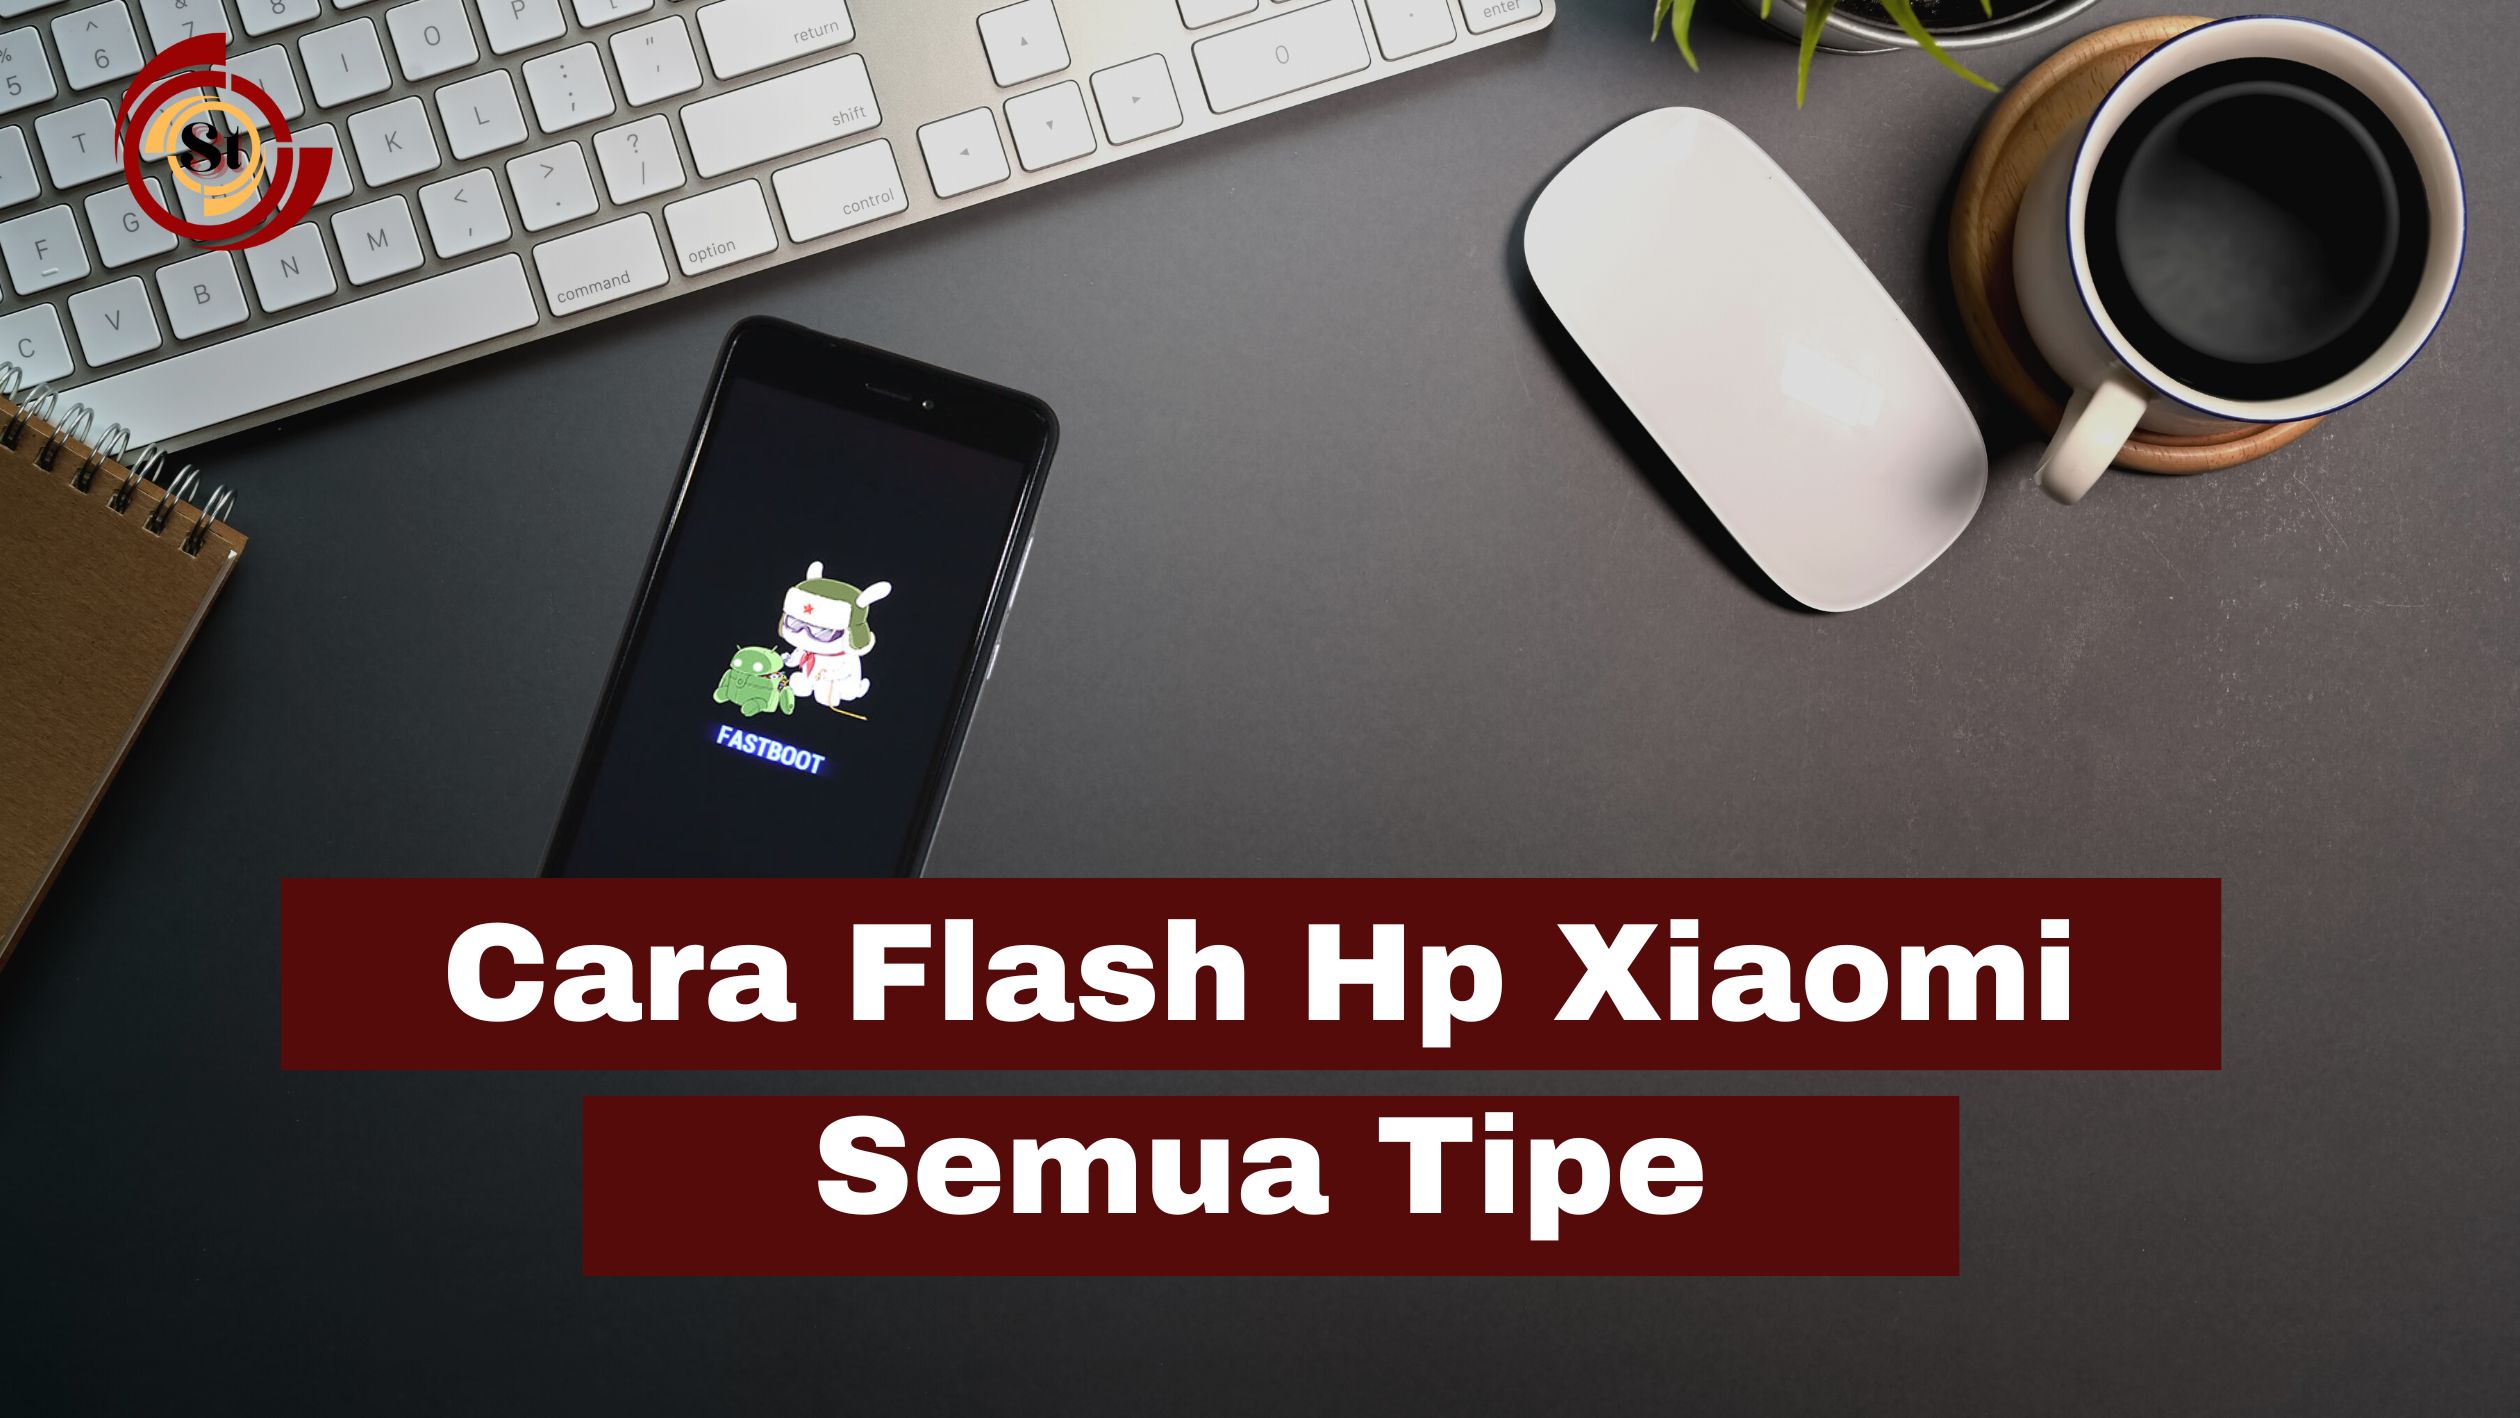 Cara Flash Hp Xiaomi Semua Tipe